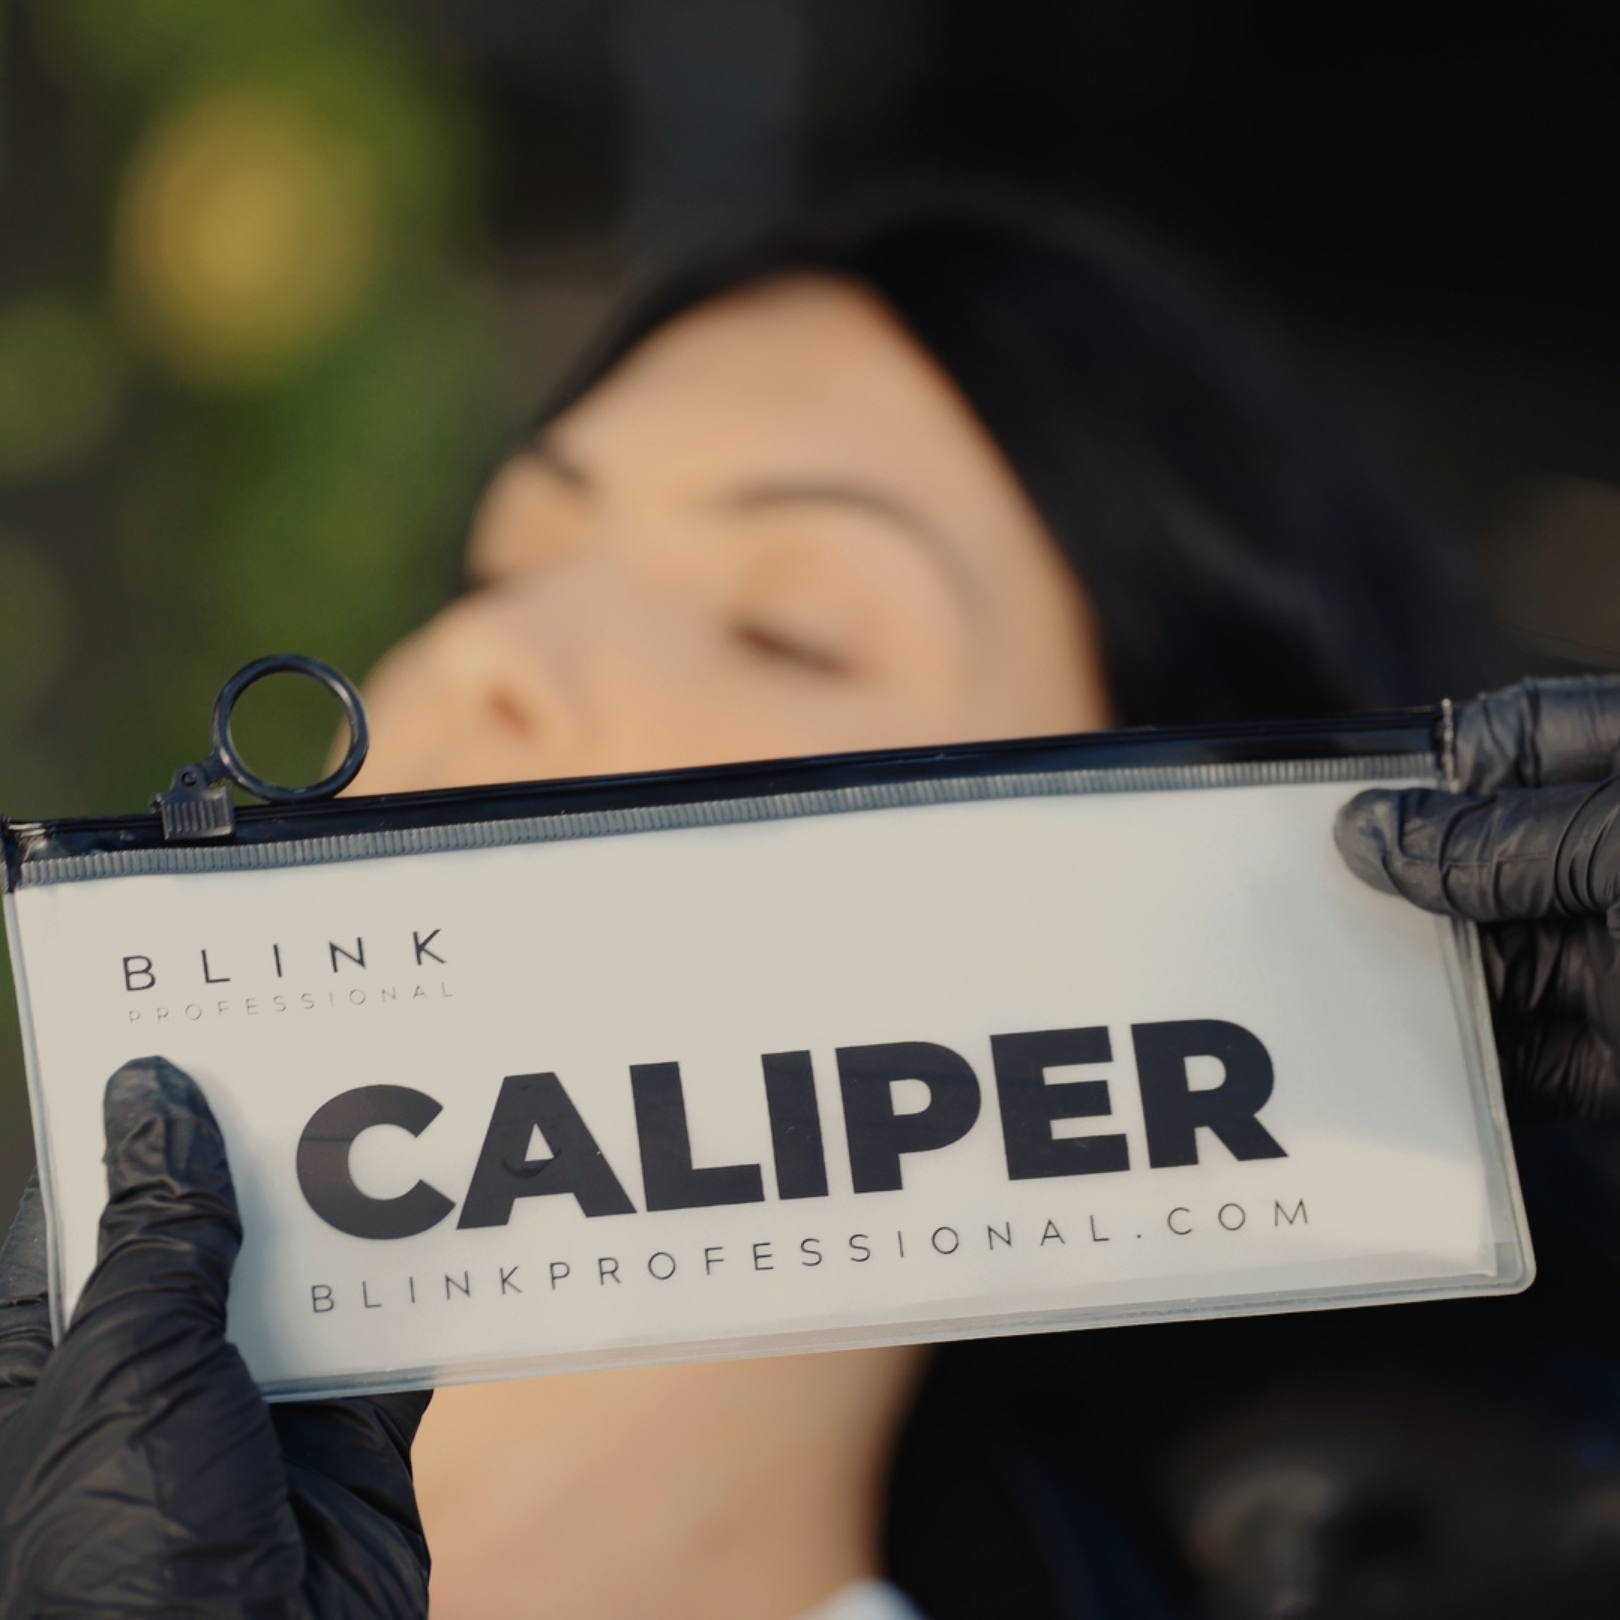 CALIPER (caliper)